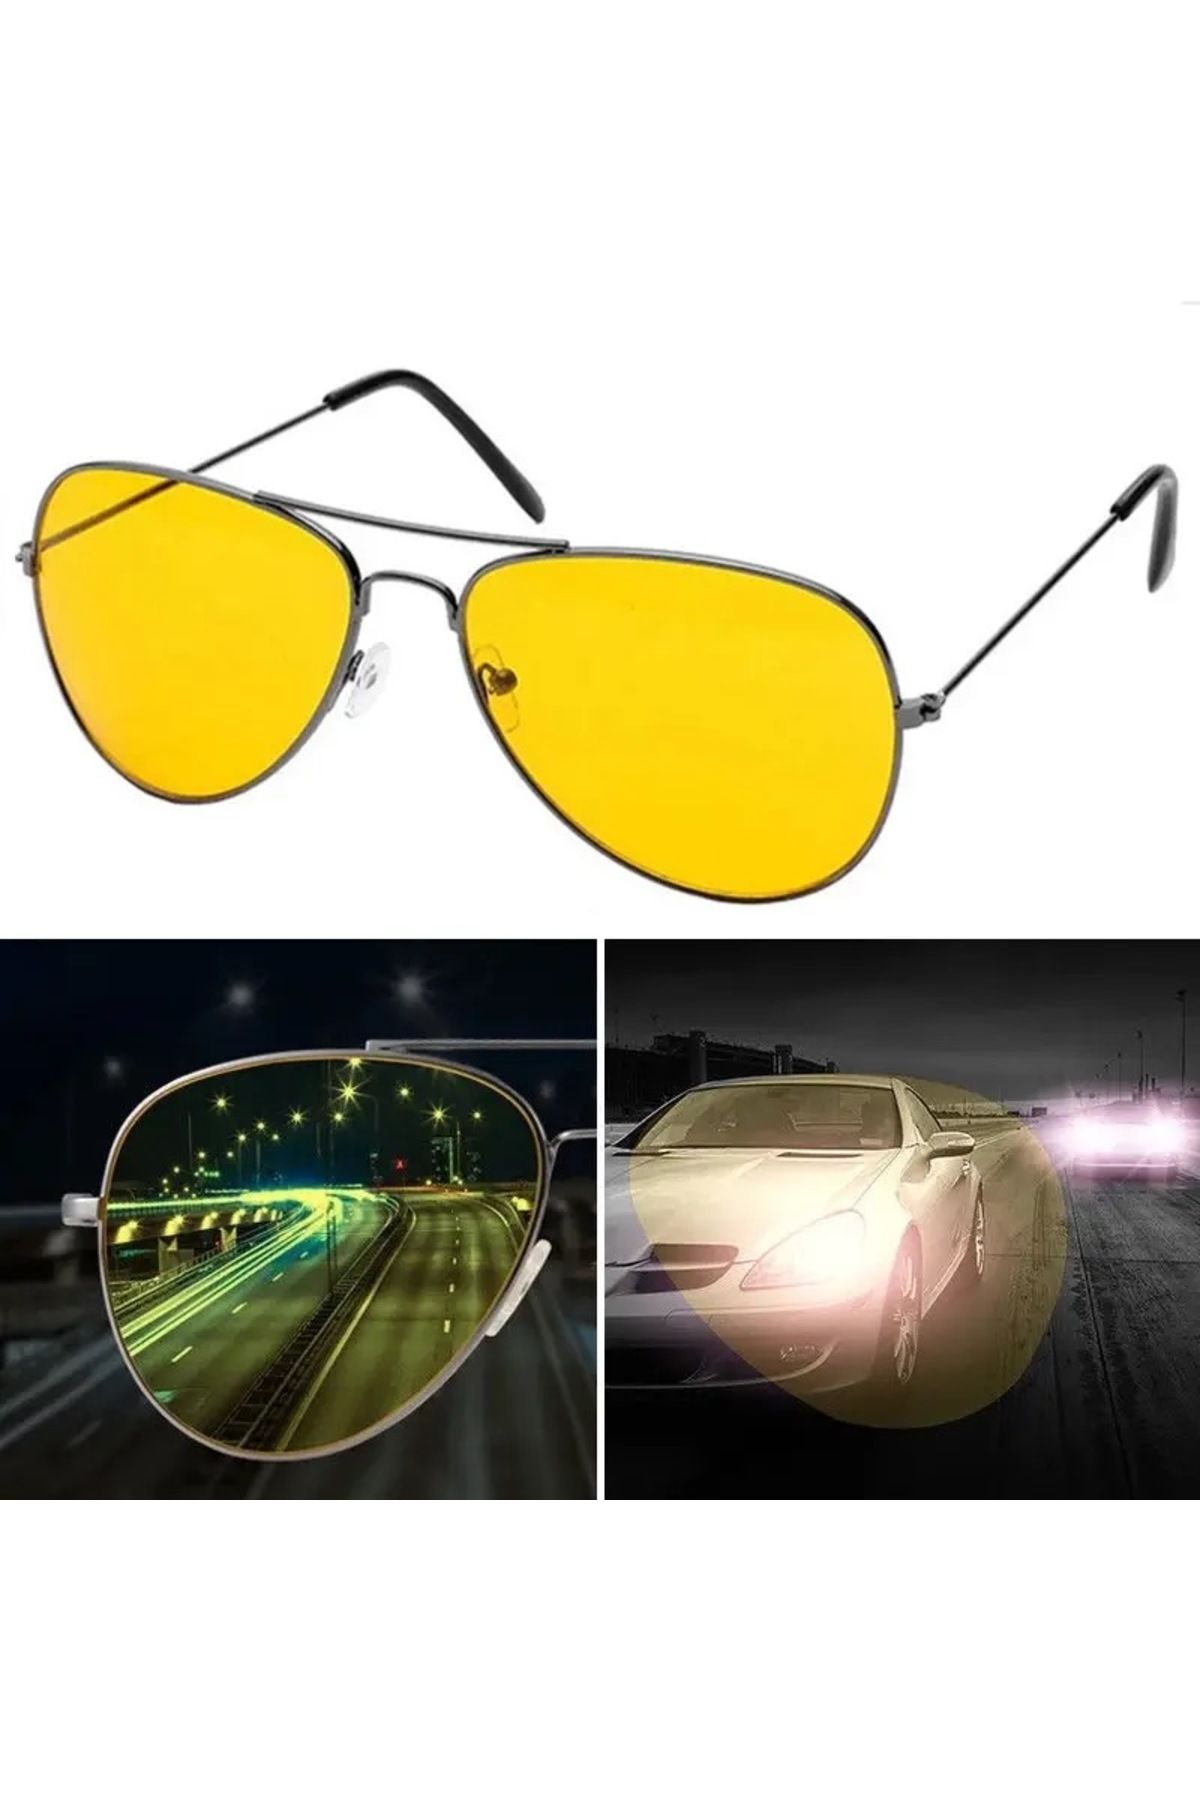 The Lavinia Gece görüş sürüş gözlüğü araç sürüş gözlüğü unisex Yeni sezon Yeni model